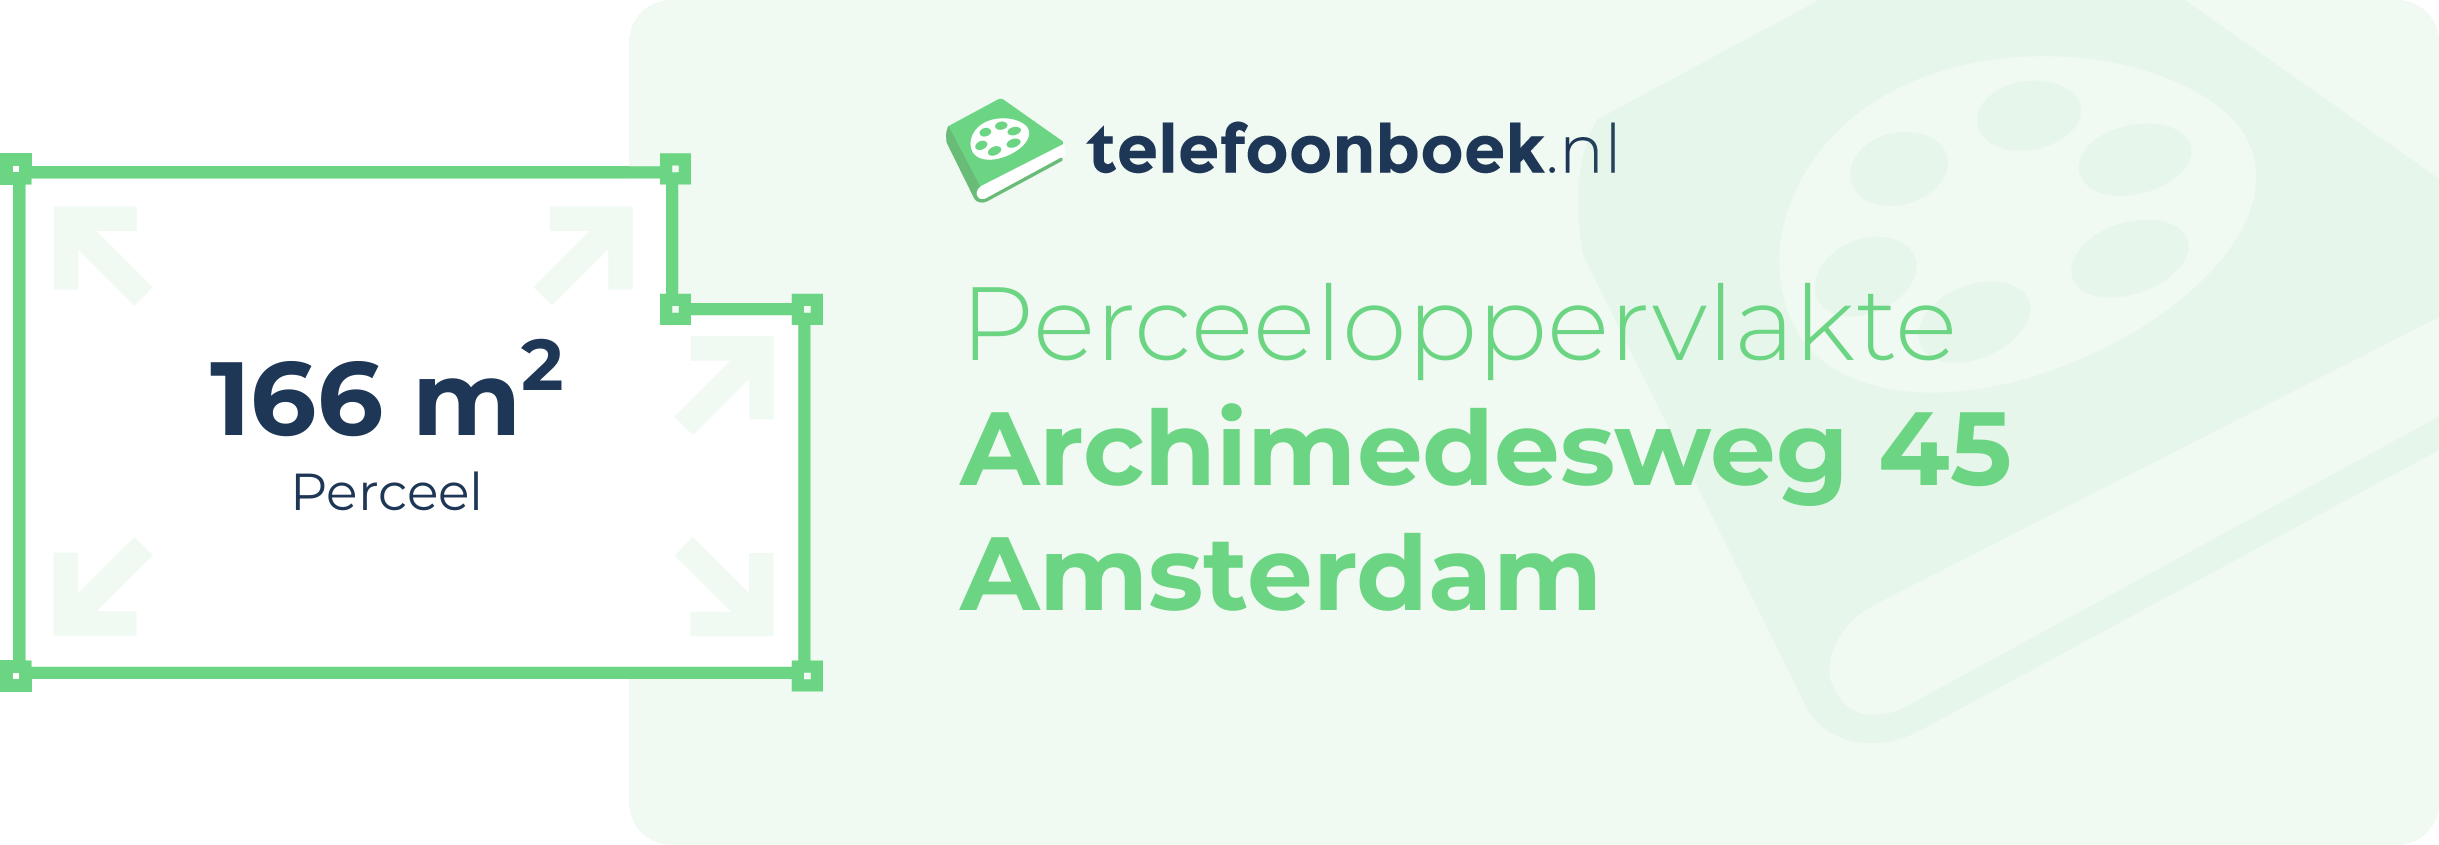 Perceeloppervlakte Archimedesweg 45 Amsterdam